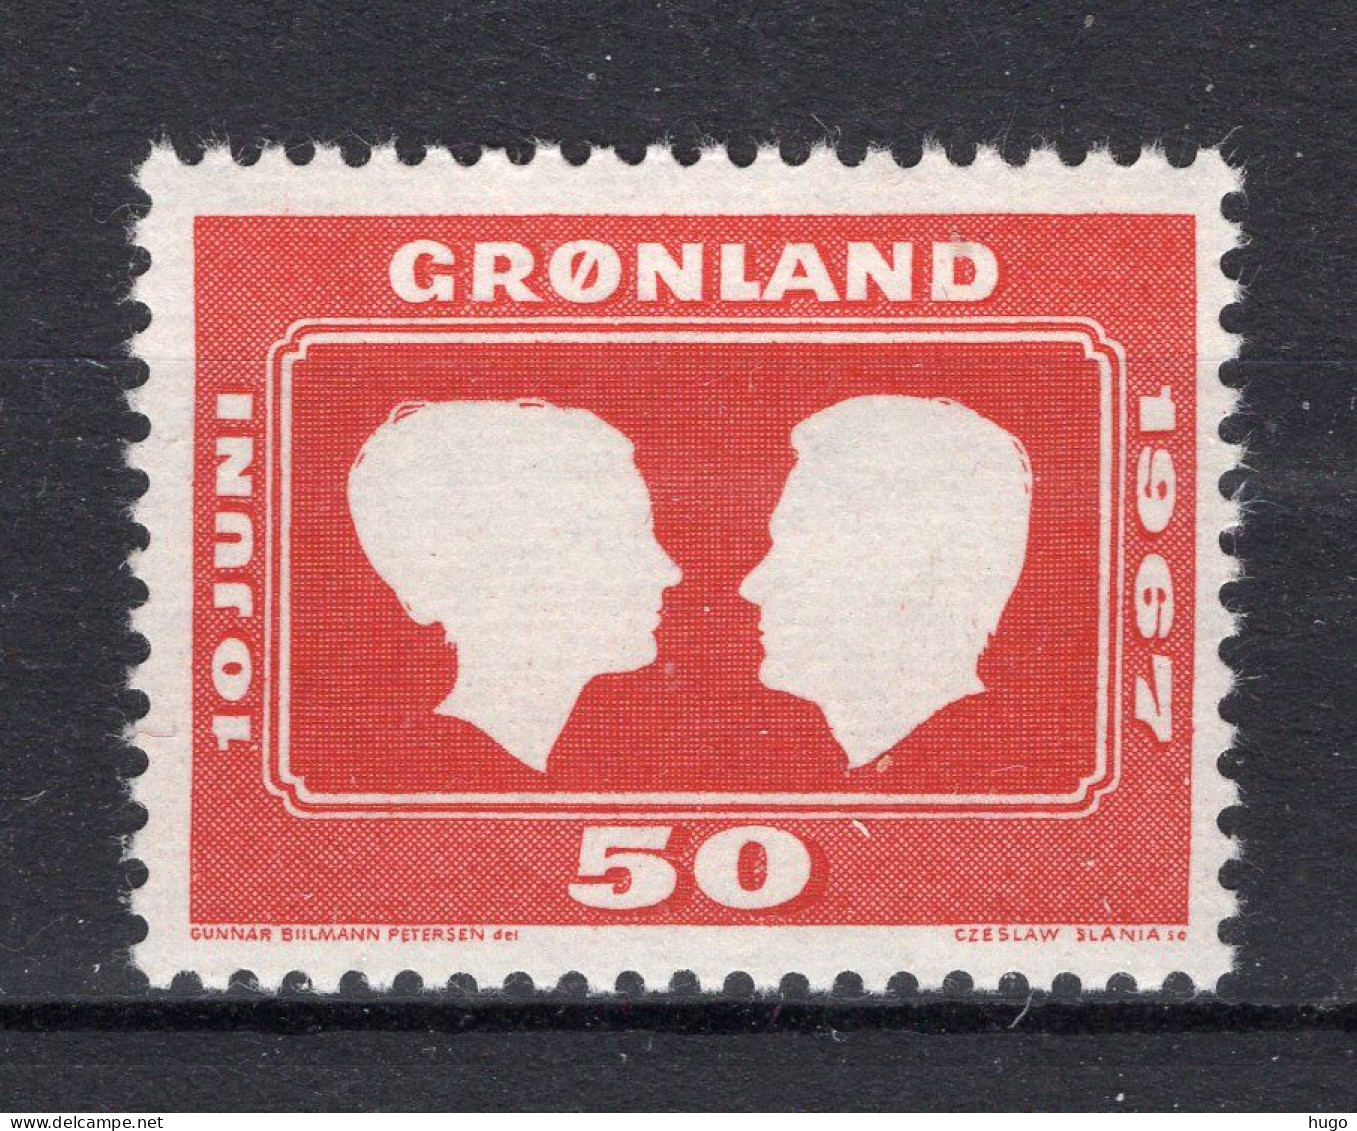 DENEMARKEN-GROENLAND 59 MNH 1967 - Nuovi